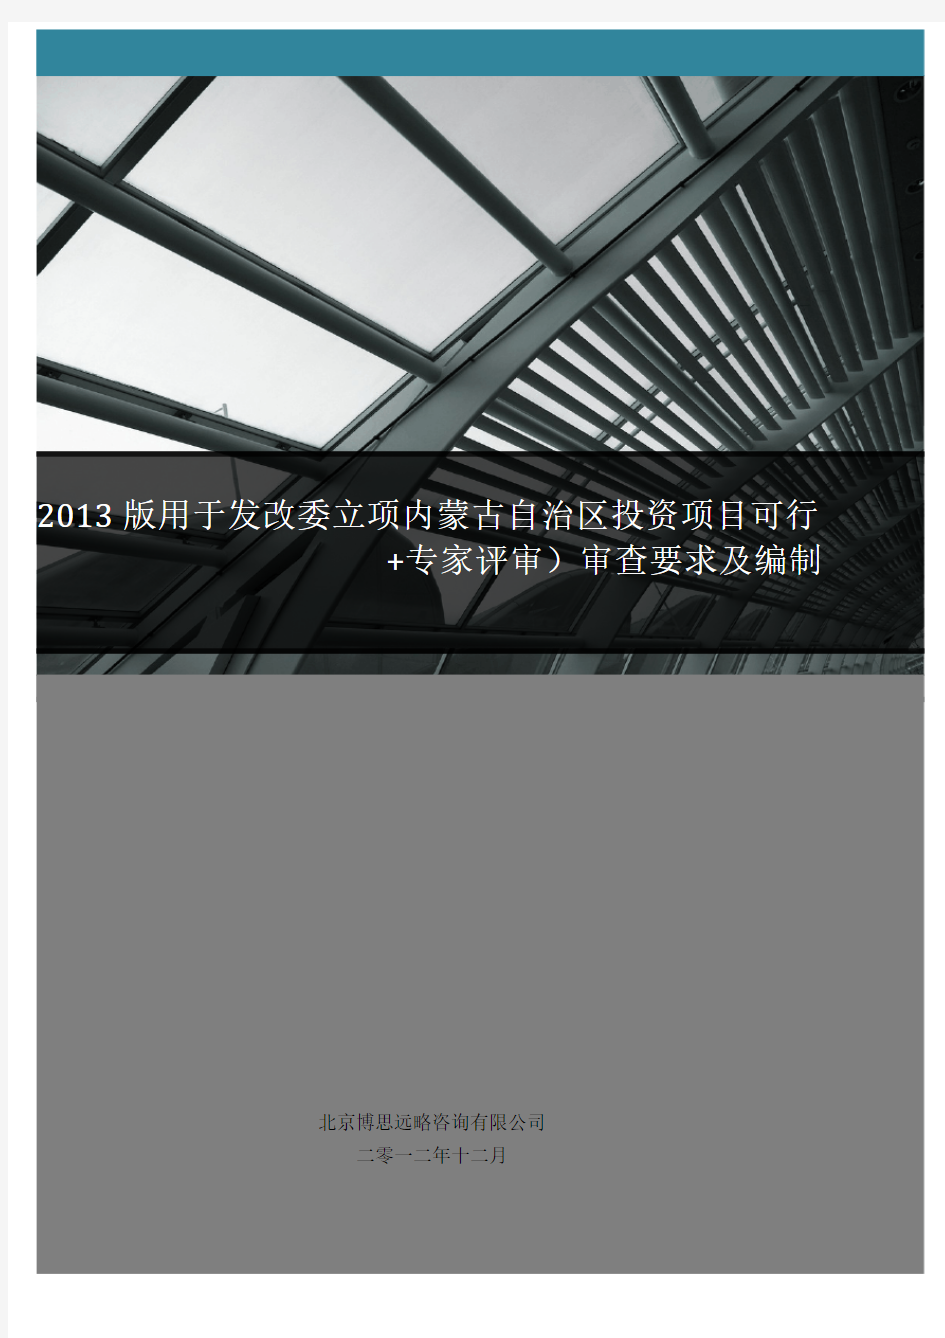 2013版用于发改委立项内蒙古投资项目可行性研究报告(甲级资质+专家评审)审查要求及编制方案